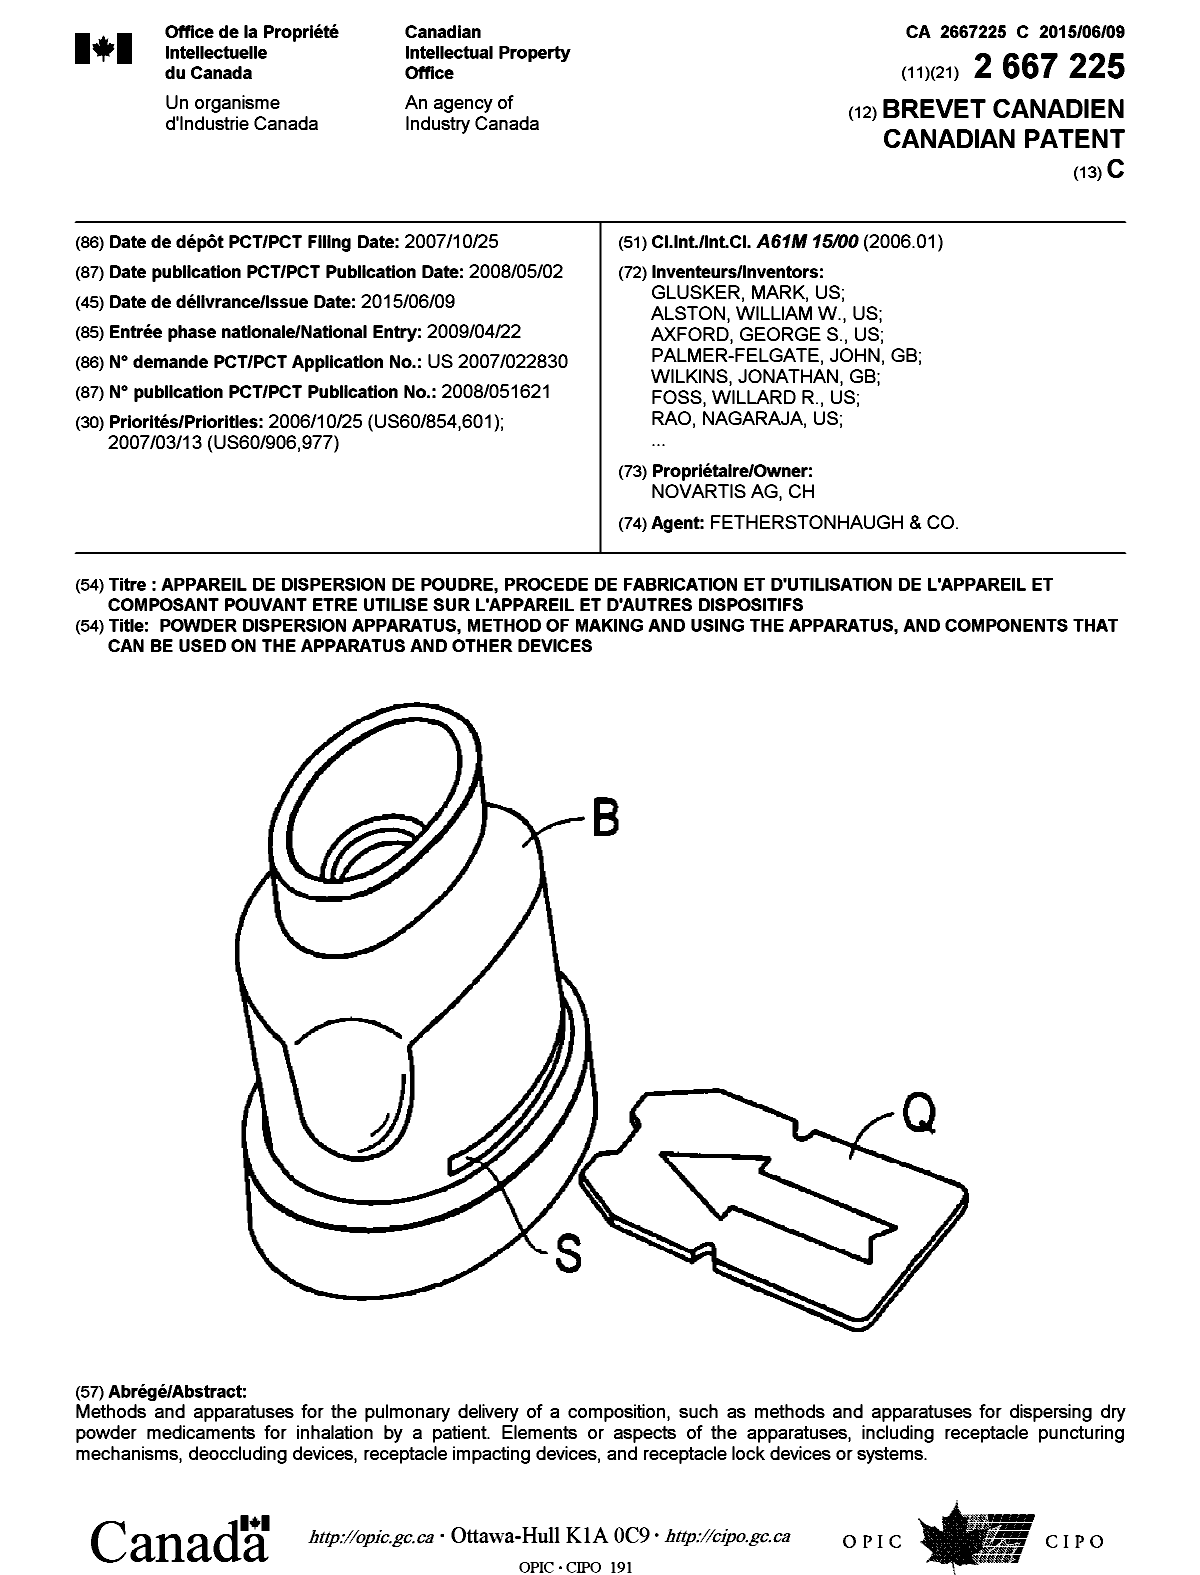 Document de brevet canadien 2667225. Page couverture 20150515. Image 1 de 2